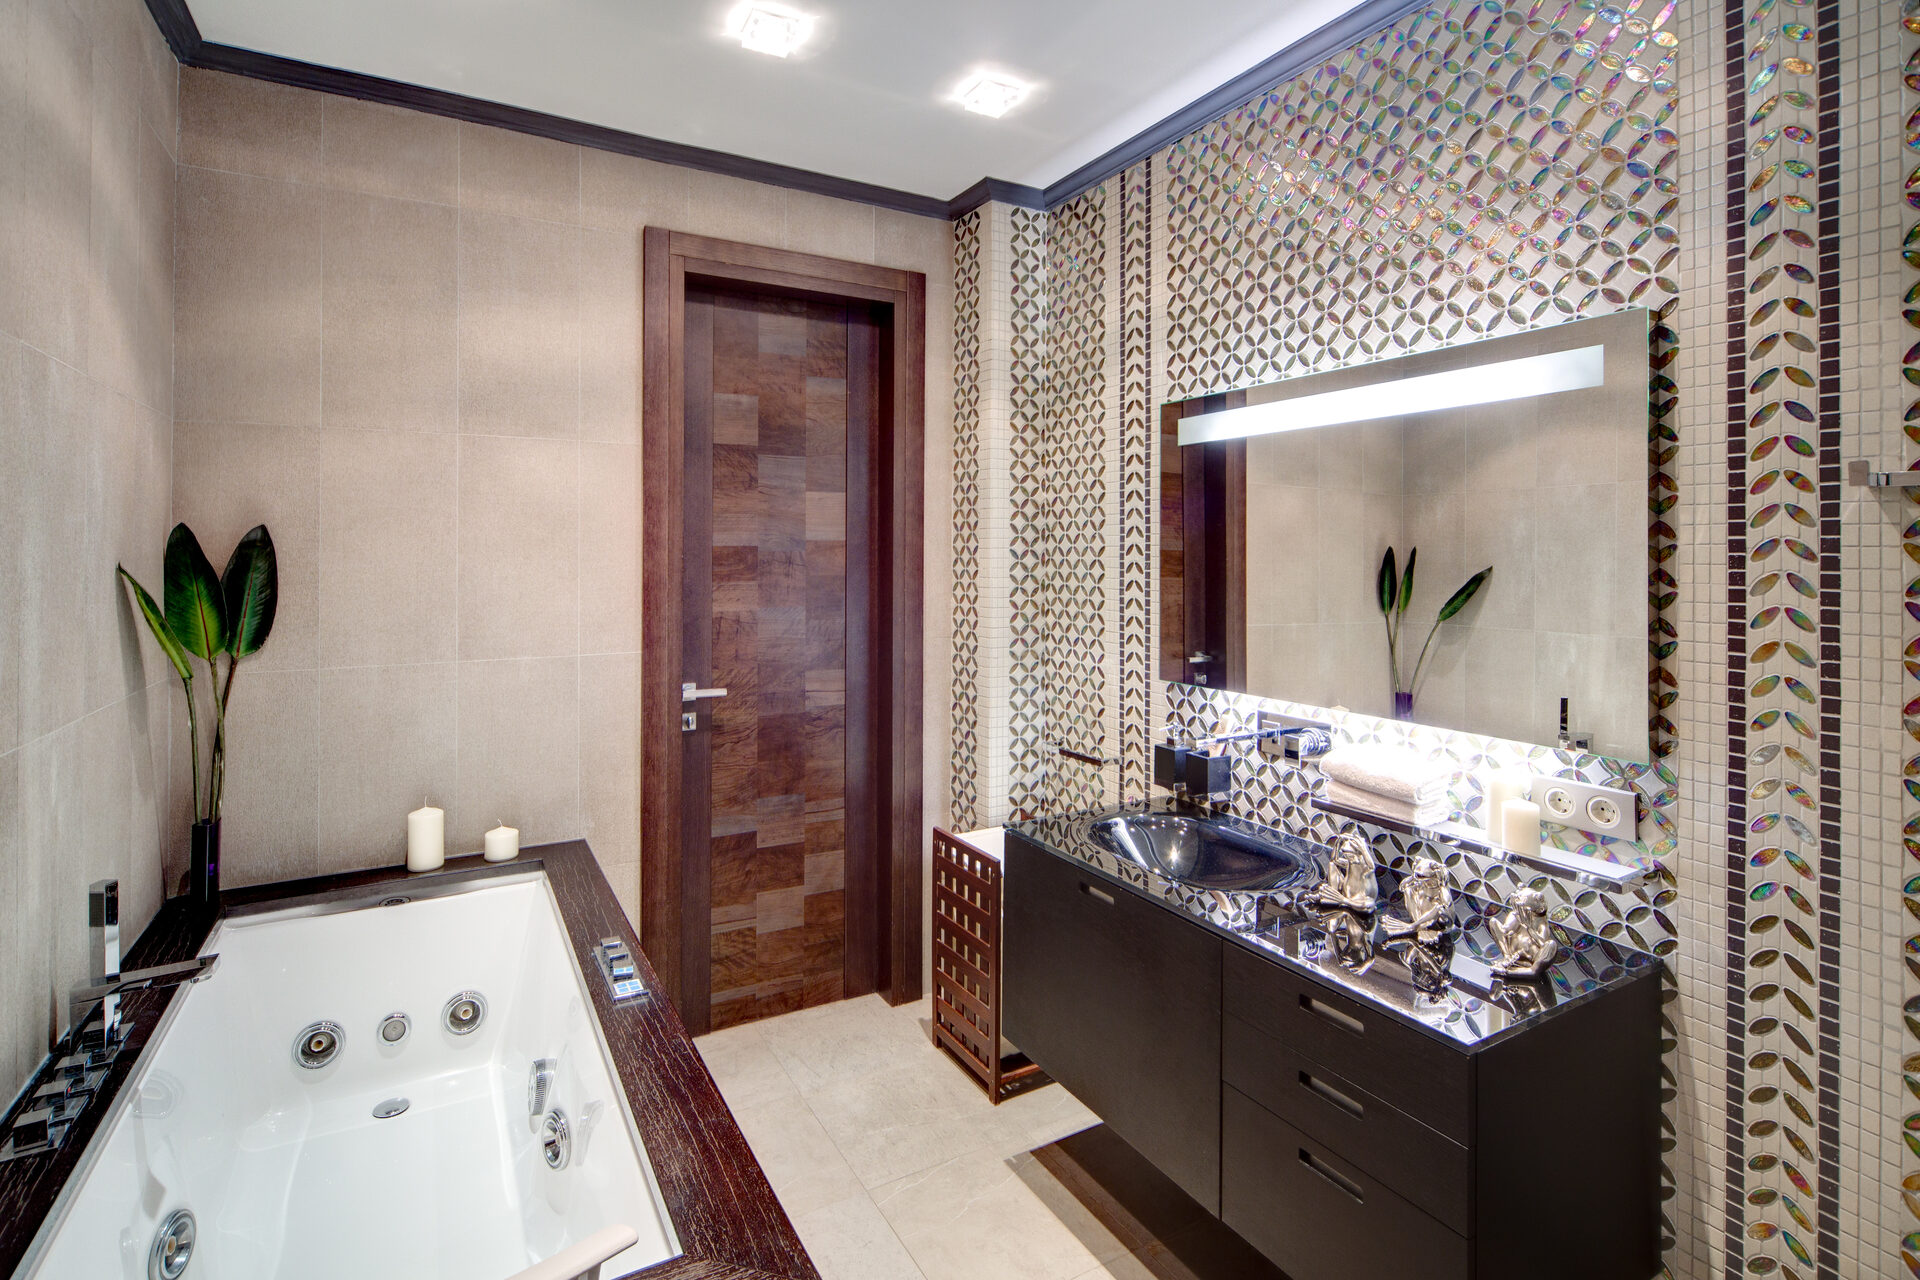 Зеркала в плитке ванной комнаты. Ванная с мозаикой. Мозаика в интерьере ванной комнаты. Зеркальная ванная комната. Ванная комната с зеркальной стеной.